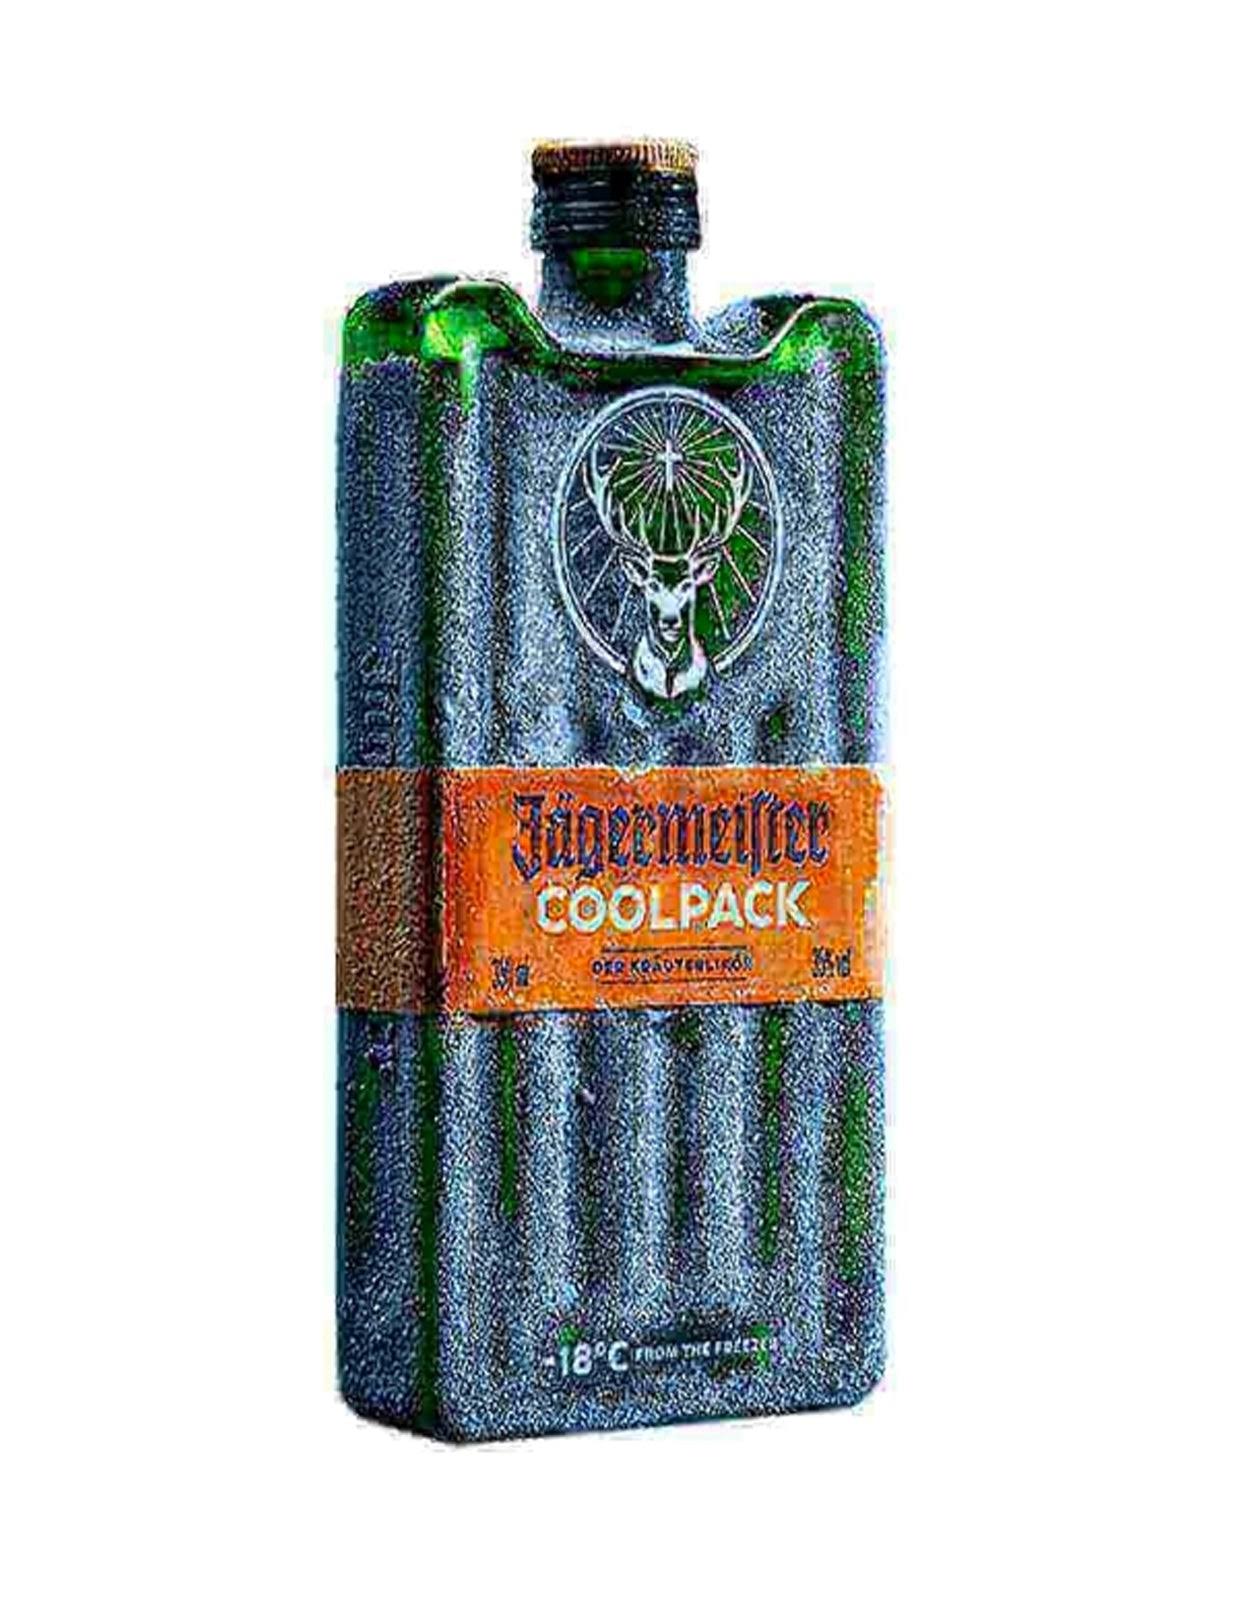 Jagermeister Coolpack - 375 ml